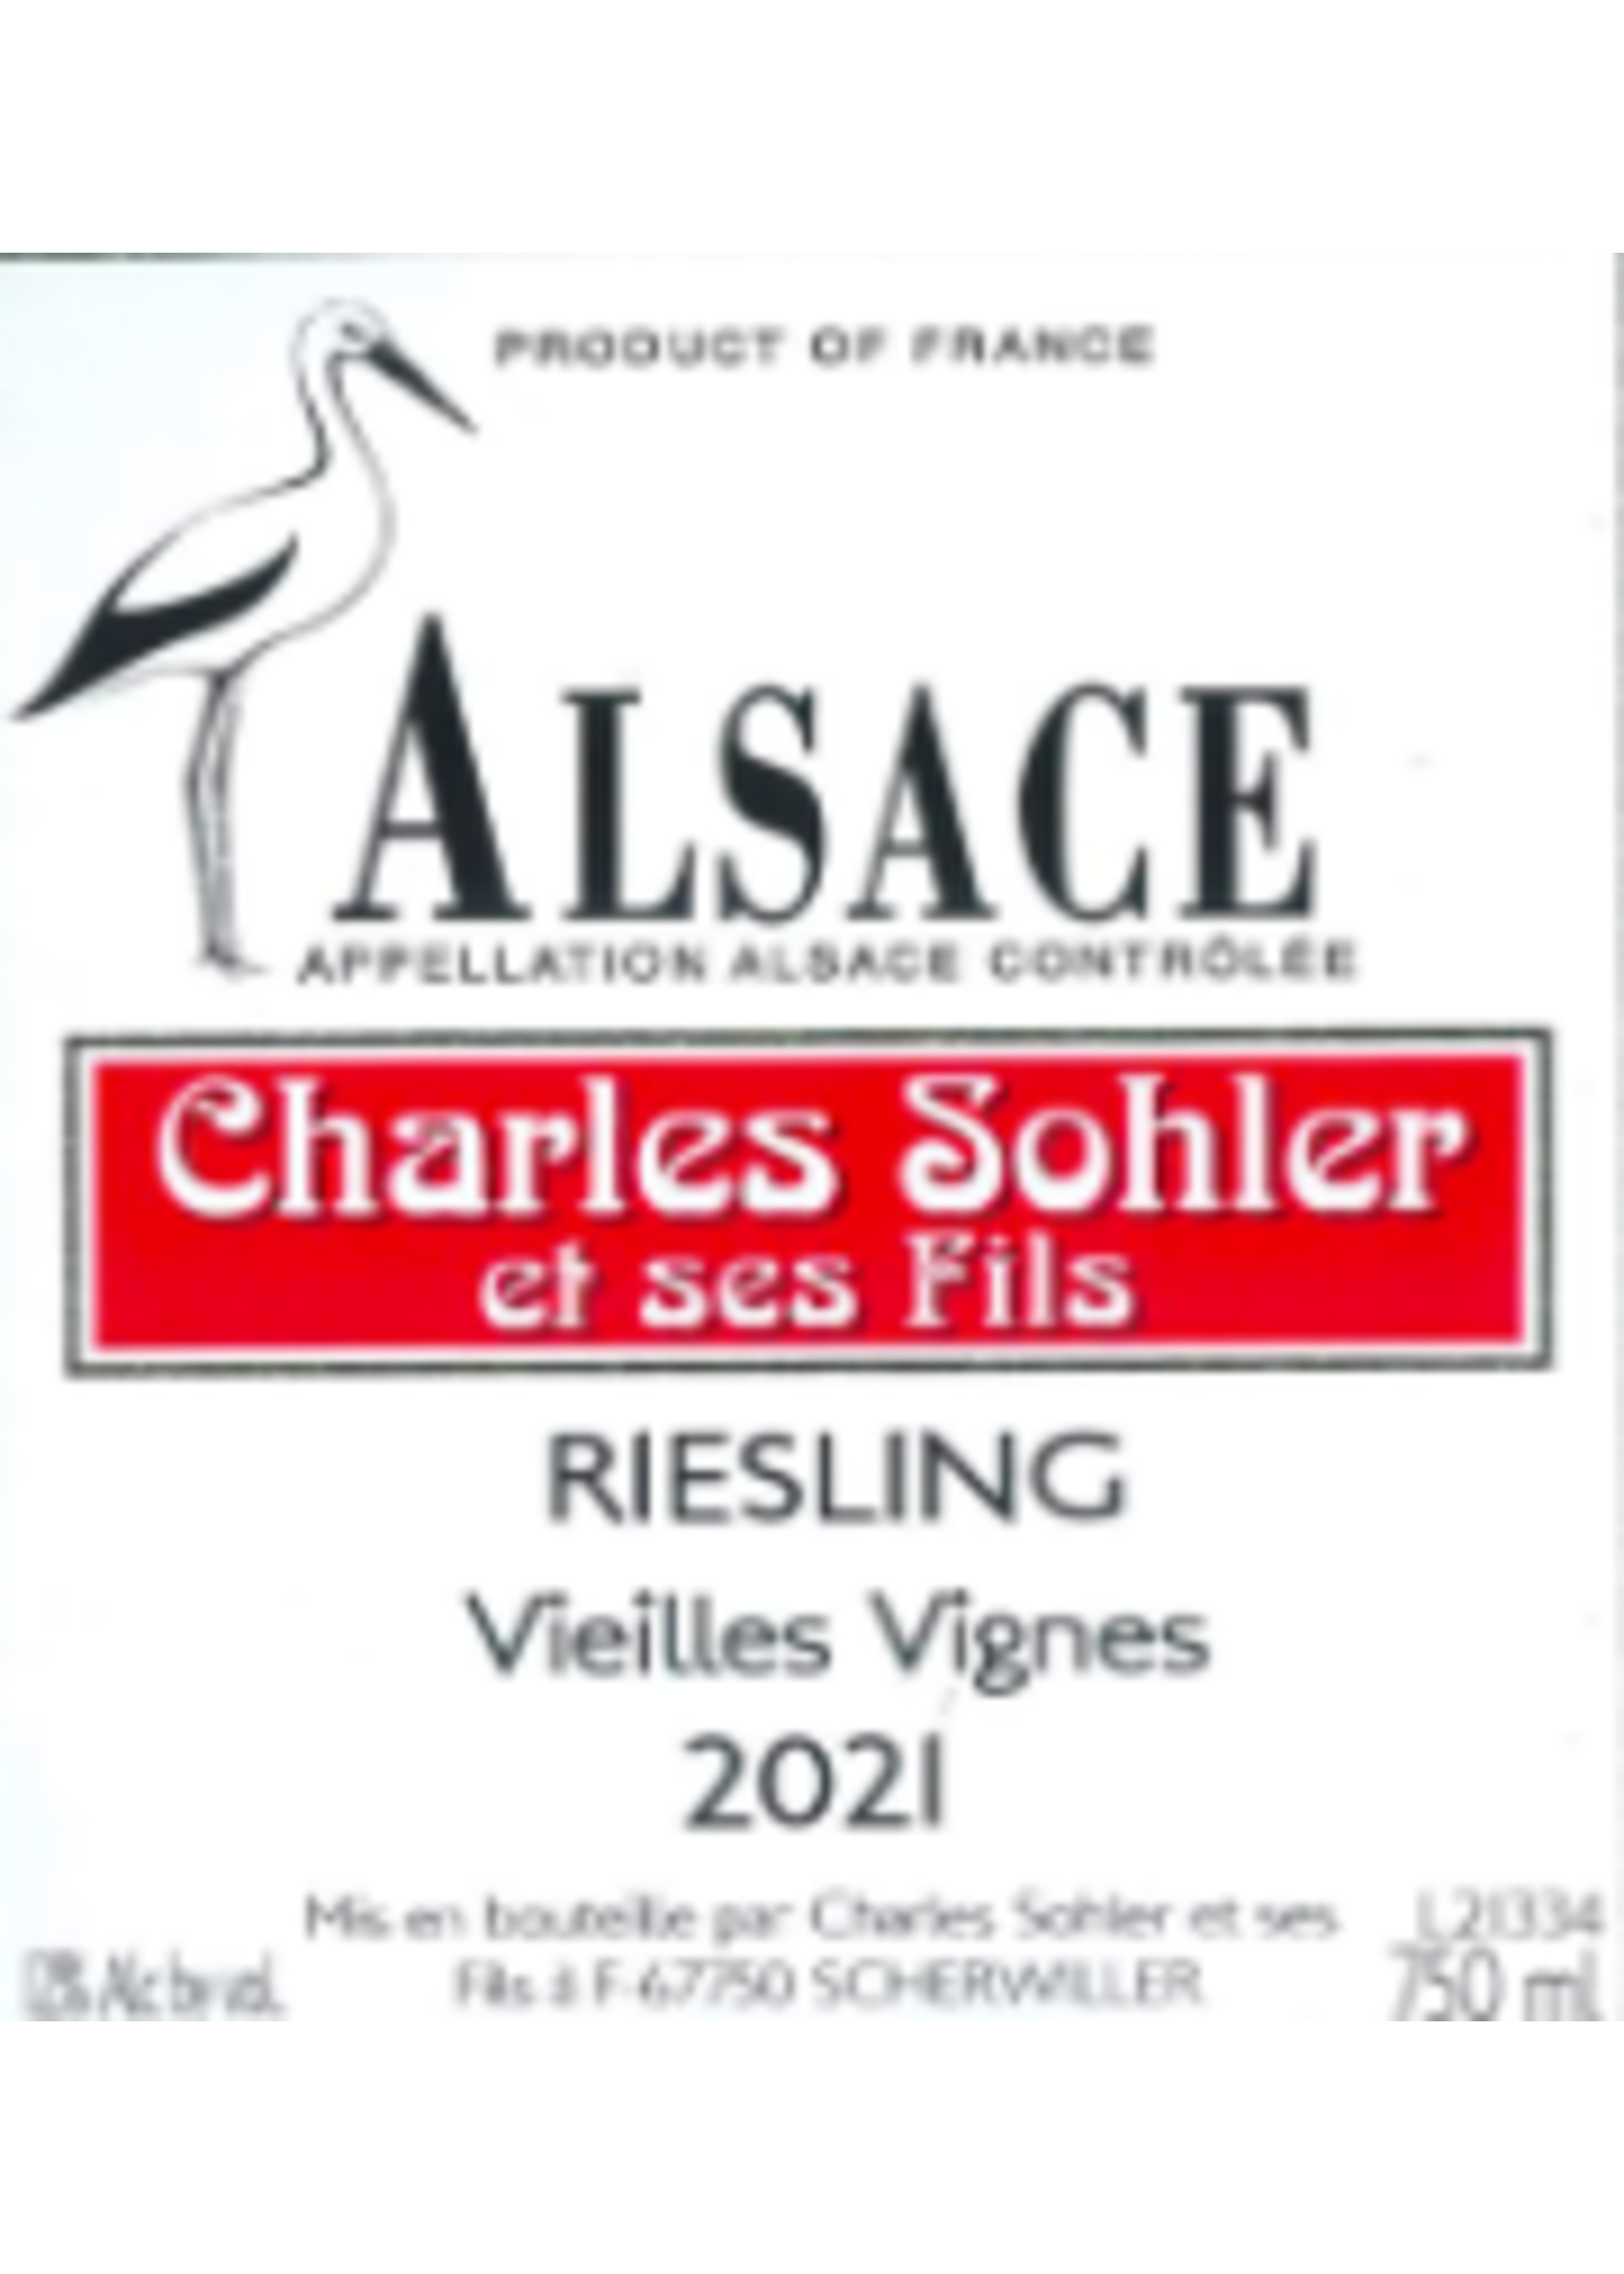 Charles Sohler et ses Fils Charles Sohler et ses Fils / Riesling Vieilles Vignes 2021 / 750mL